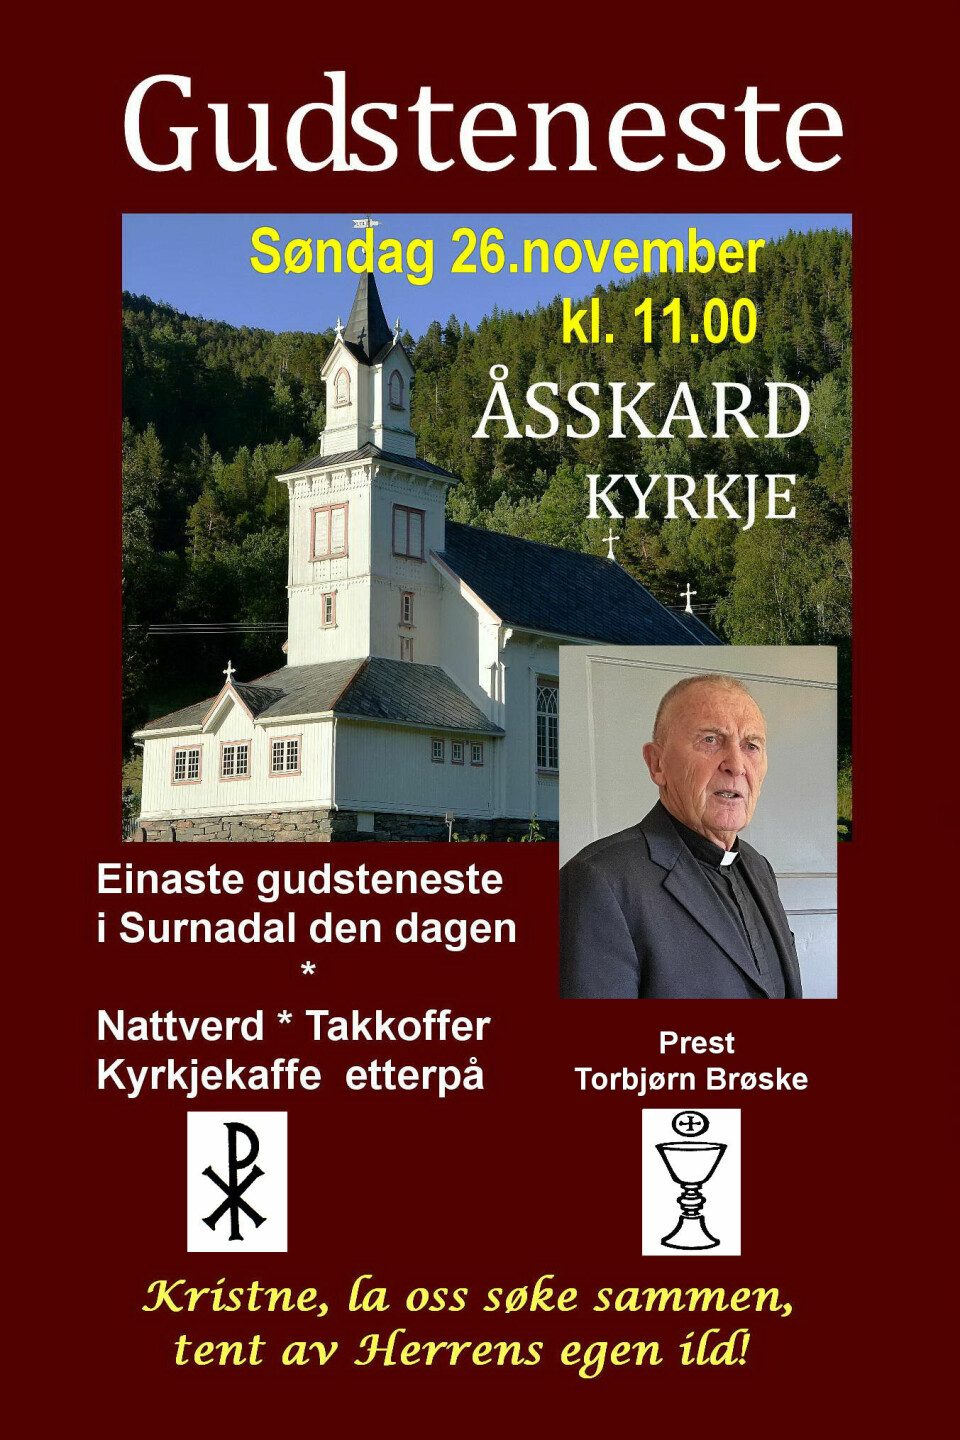 Plakat om gudstjeneste i Åsskard kirke søndag 26. november kl 11.